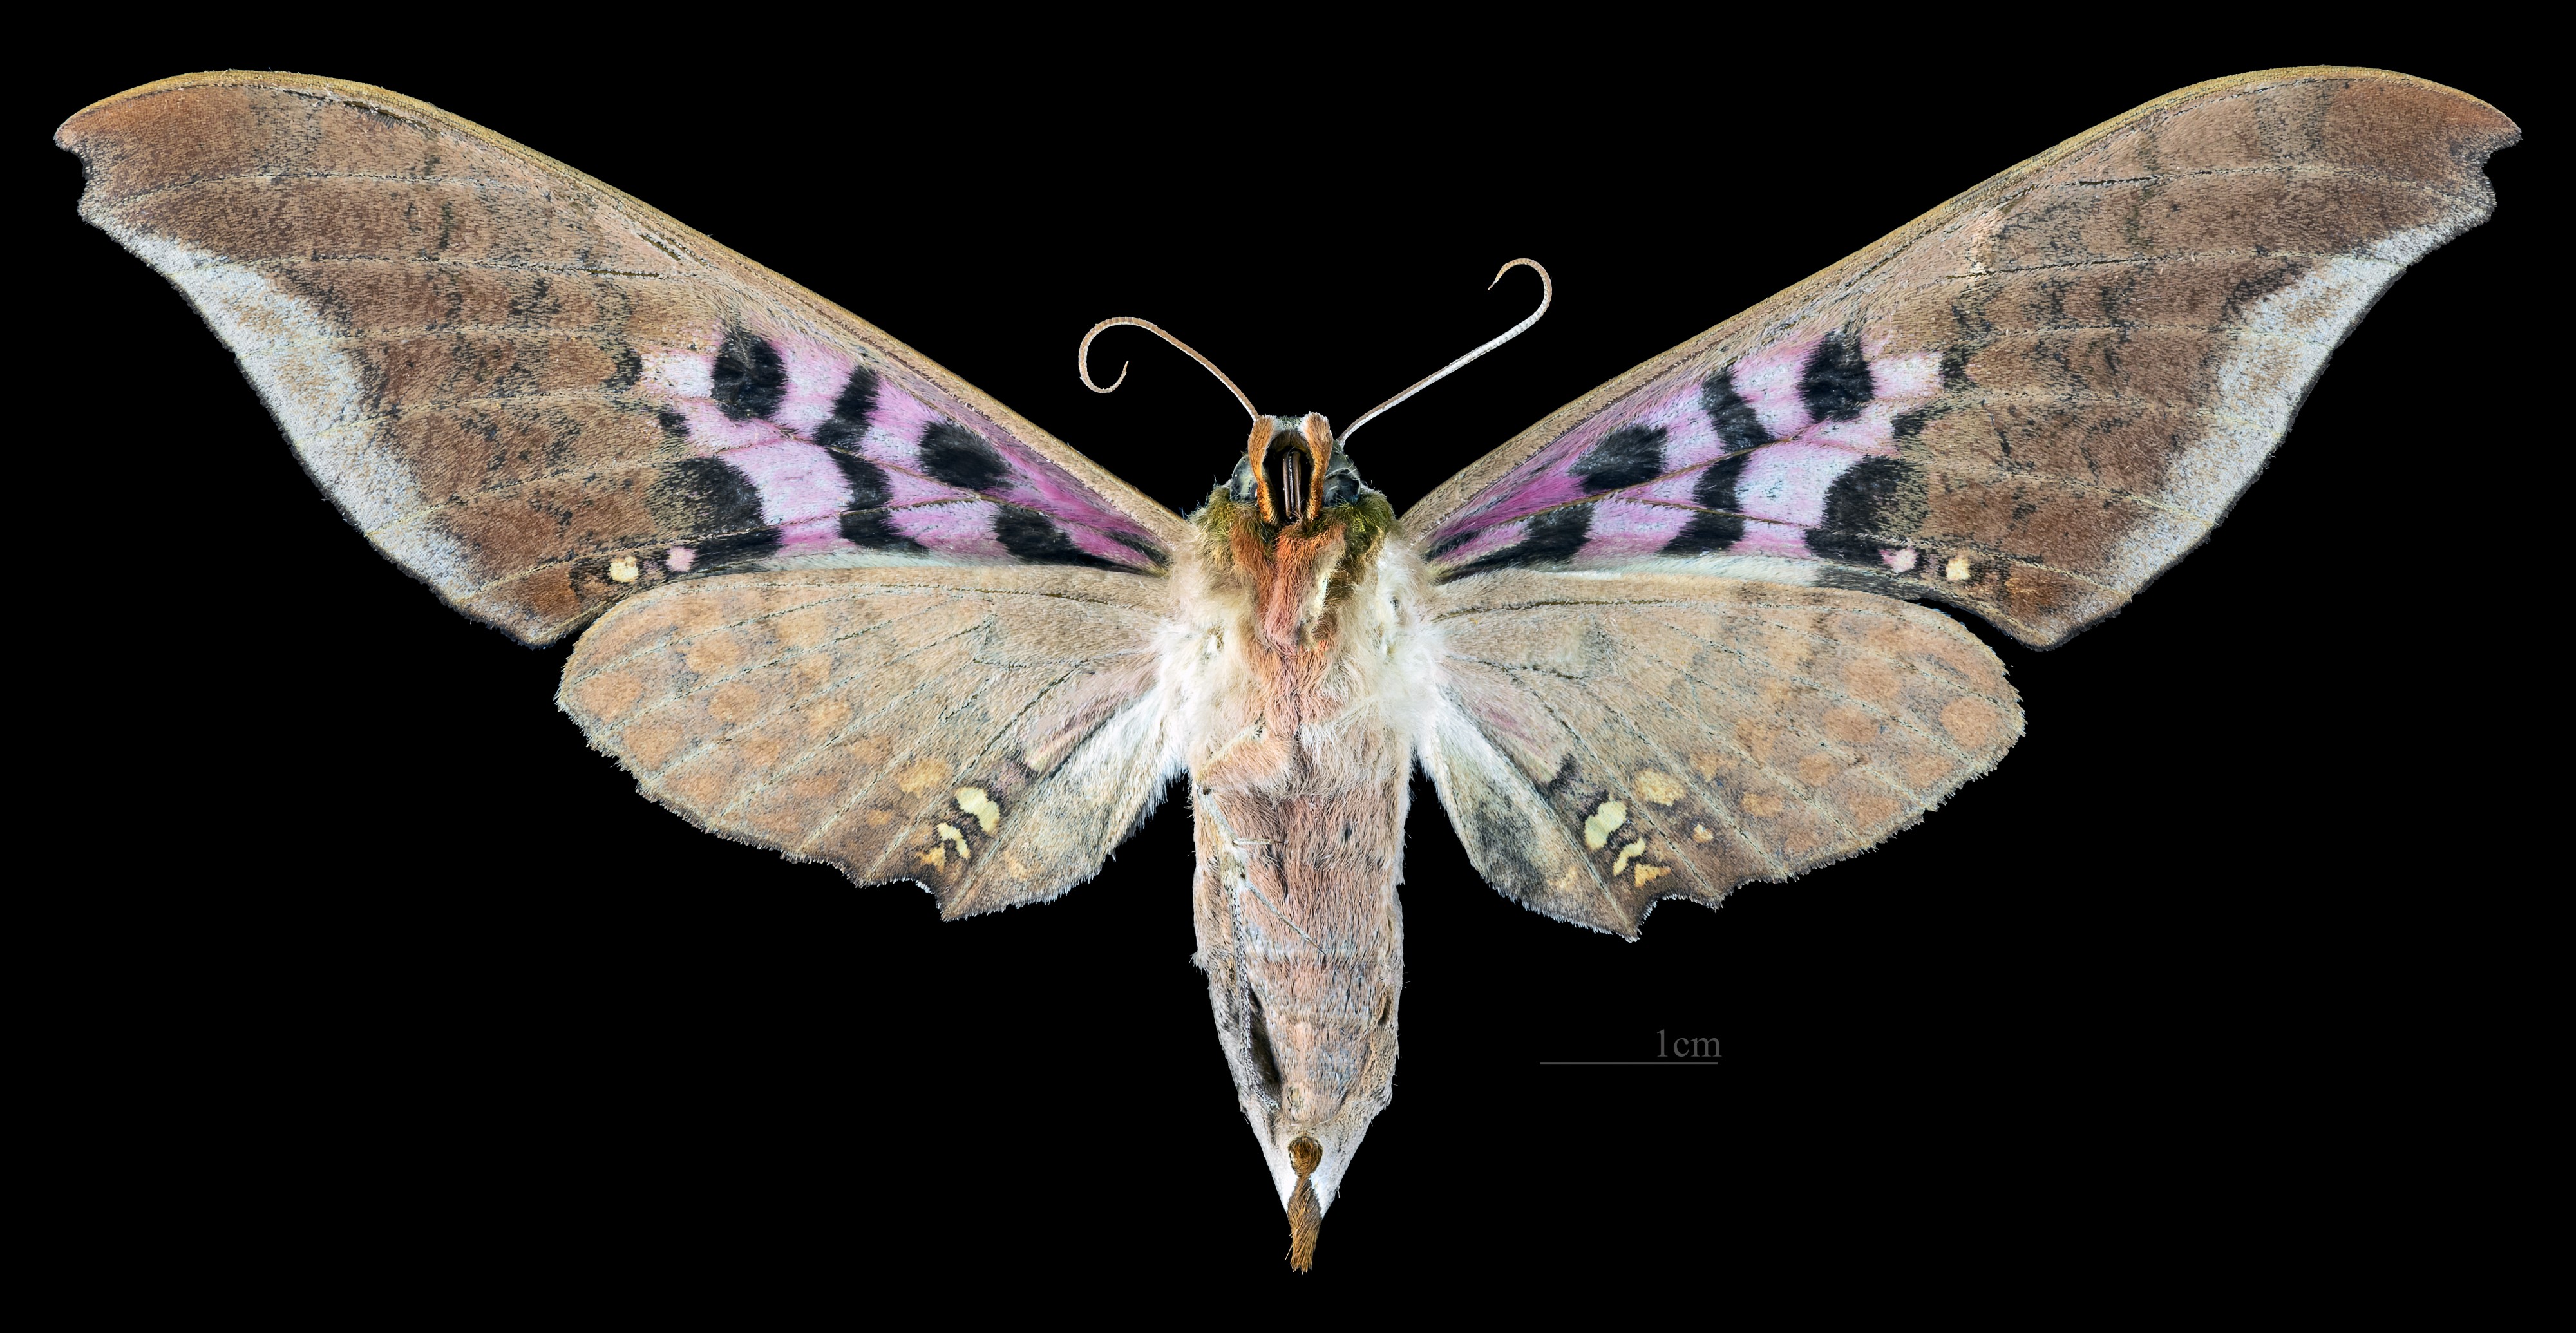 Adhemarius gannascus MHNT CUT 2010 0 281 Alto Palmar Chapare Bolivia female ventral